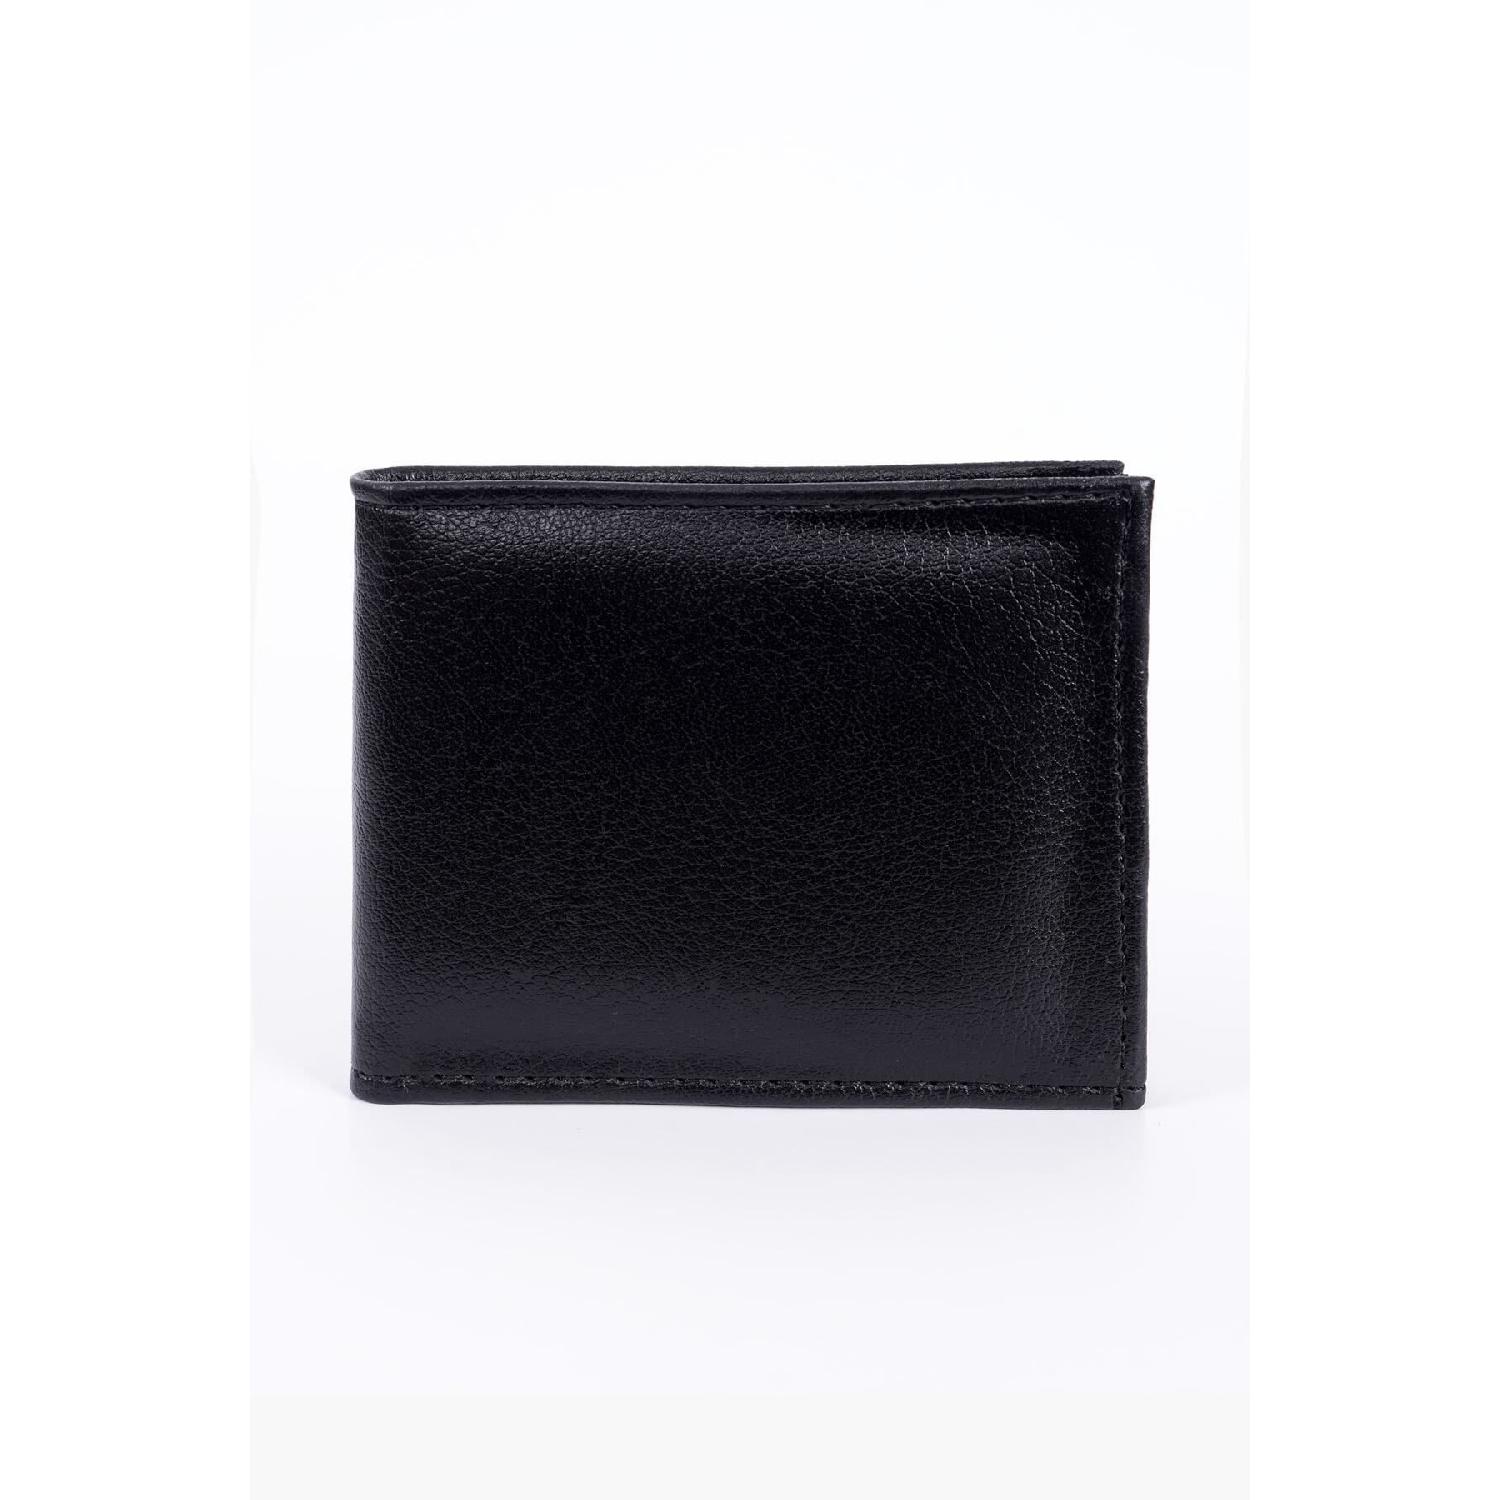 Santra Sports Wear Black Men's Wallet, Gift Wallet